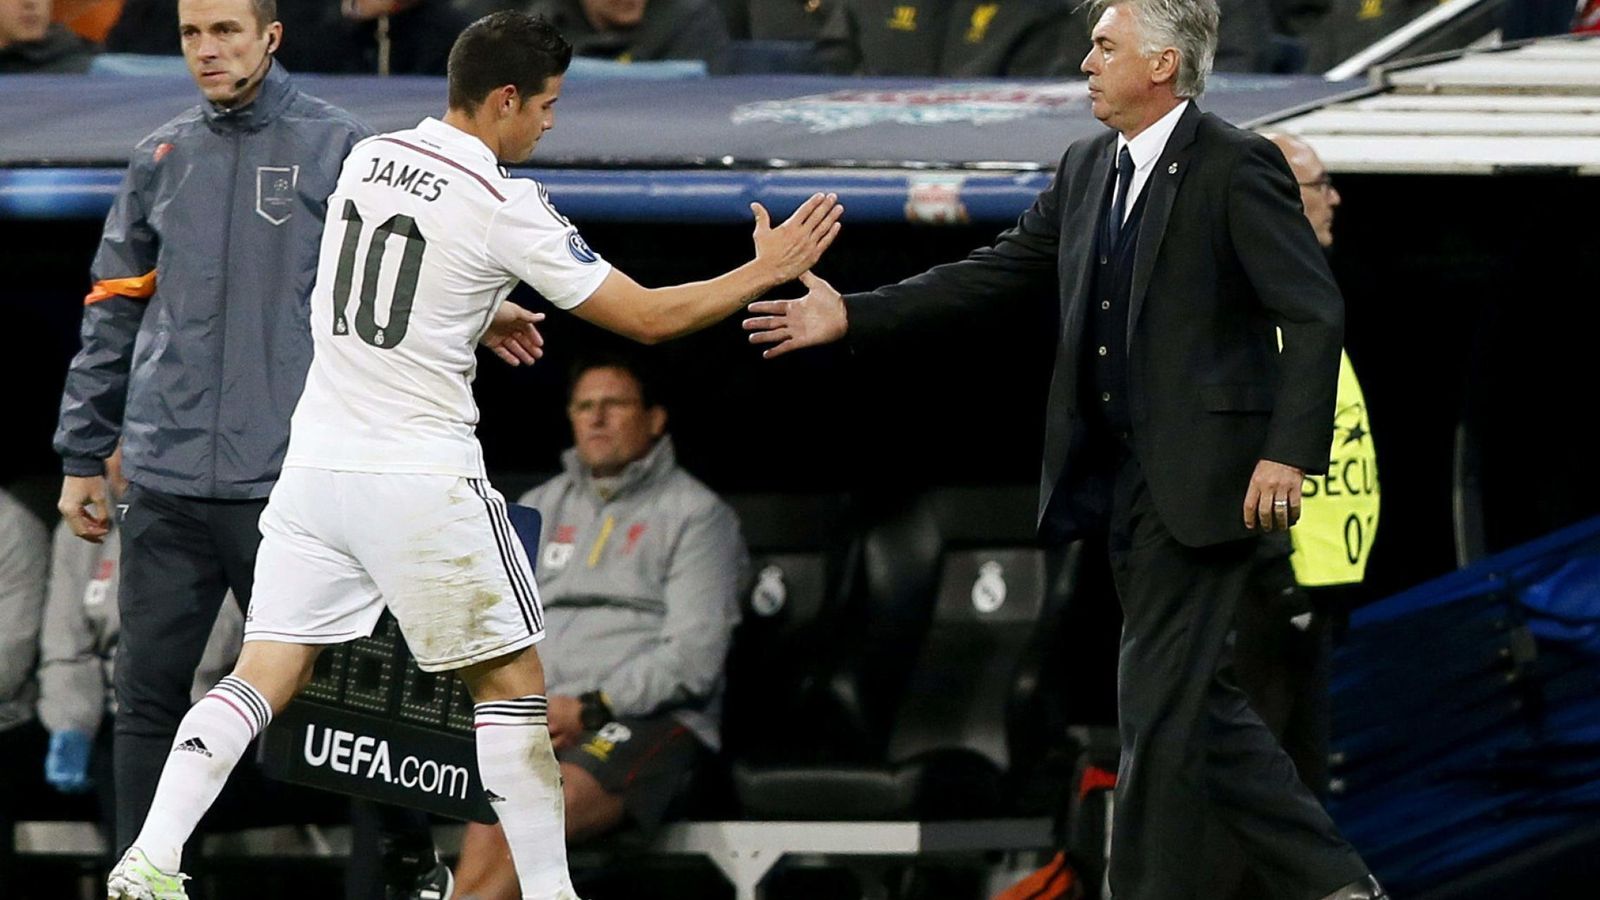 Foto: Carlo Ancelotti saluda a James Rodríguez durante un partido de la Liga de Campeones.